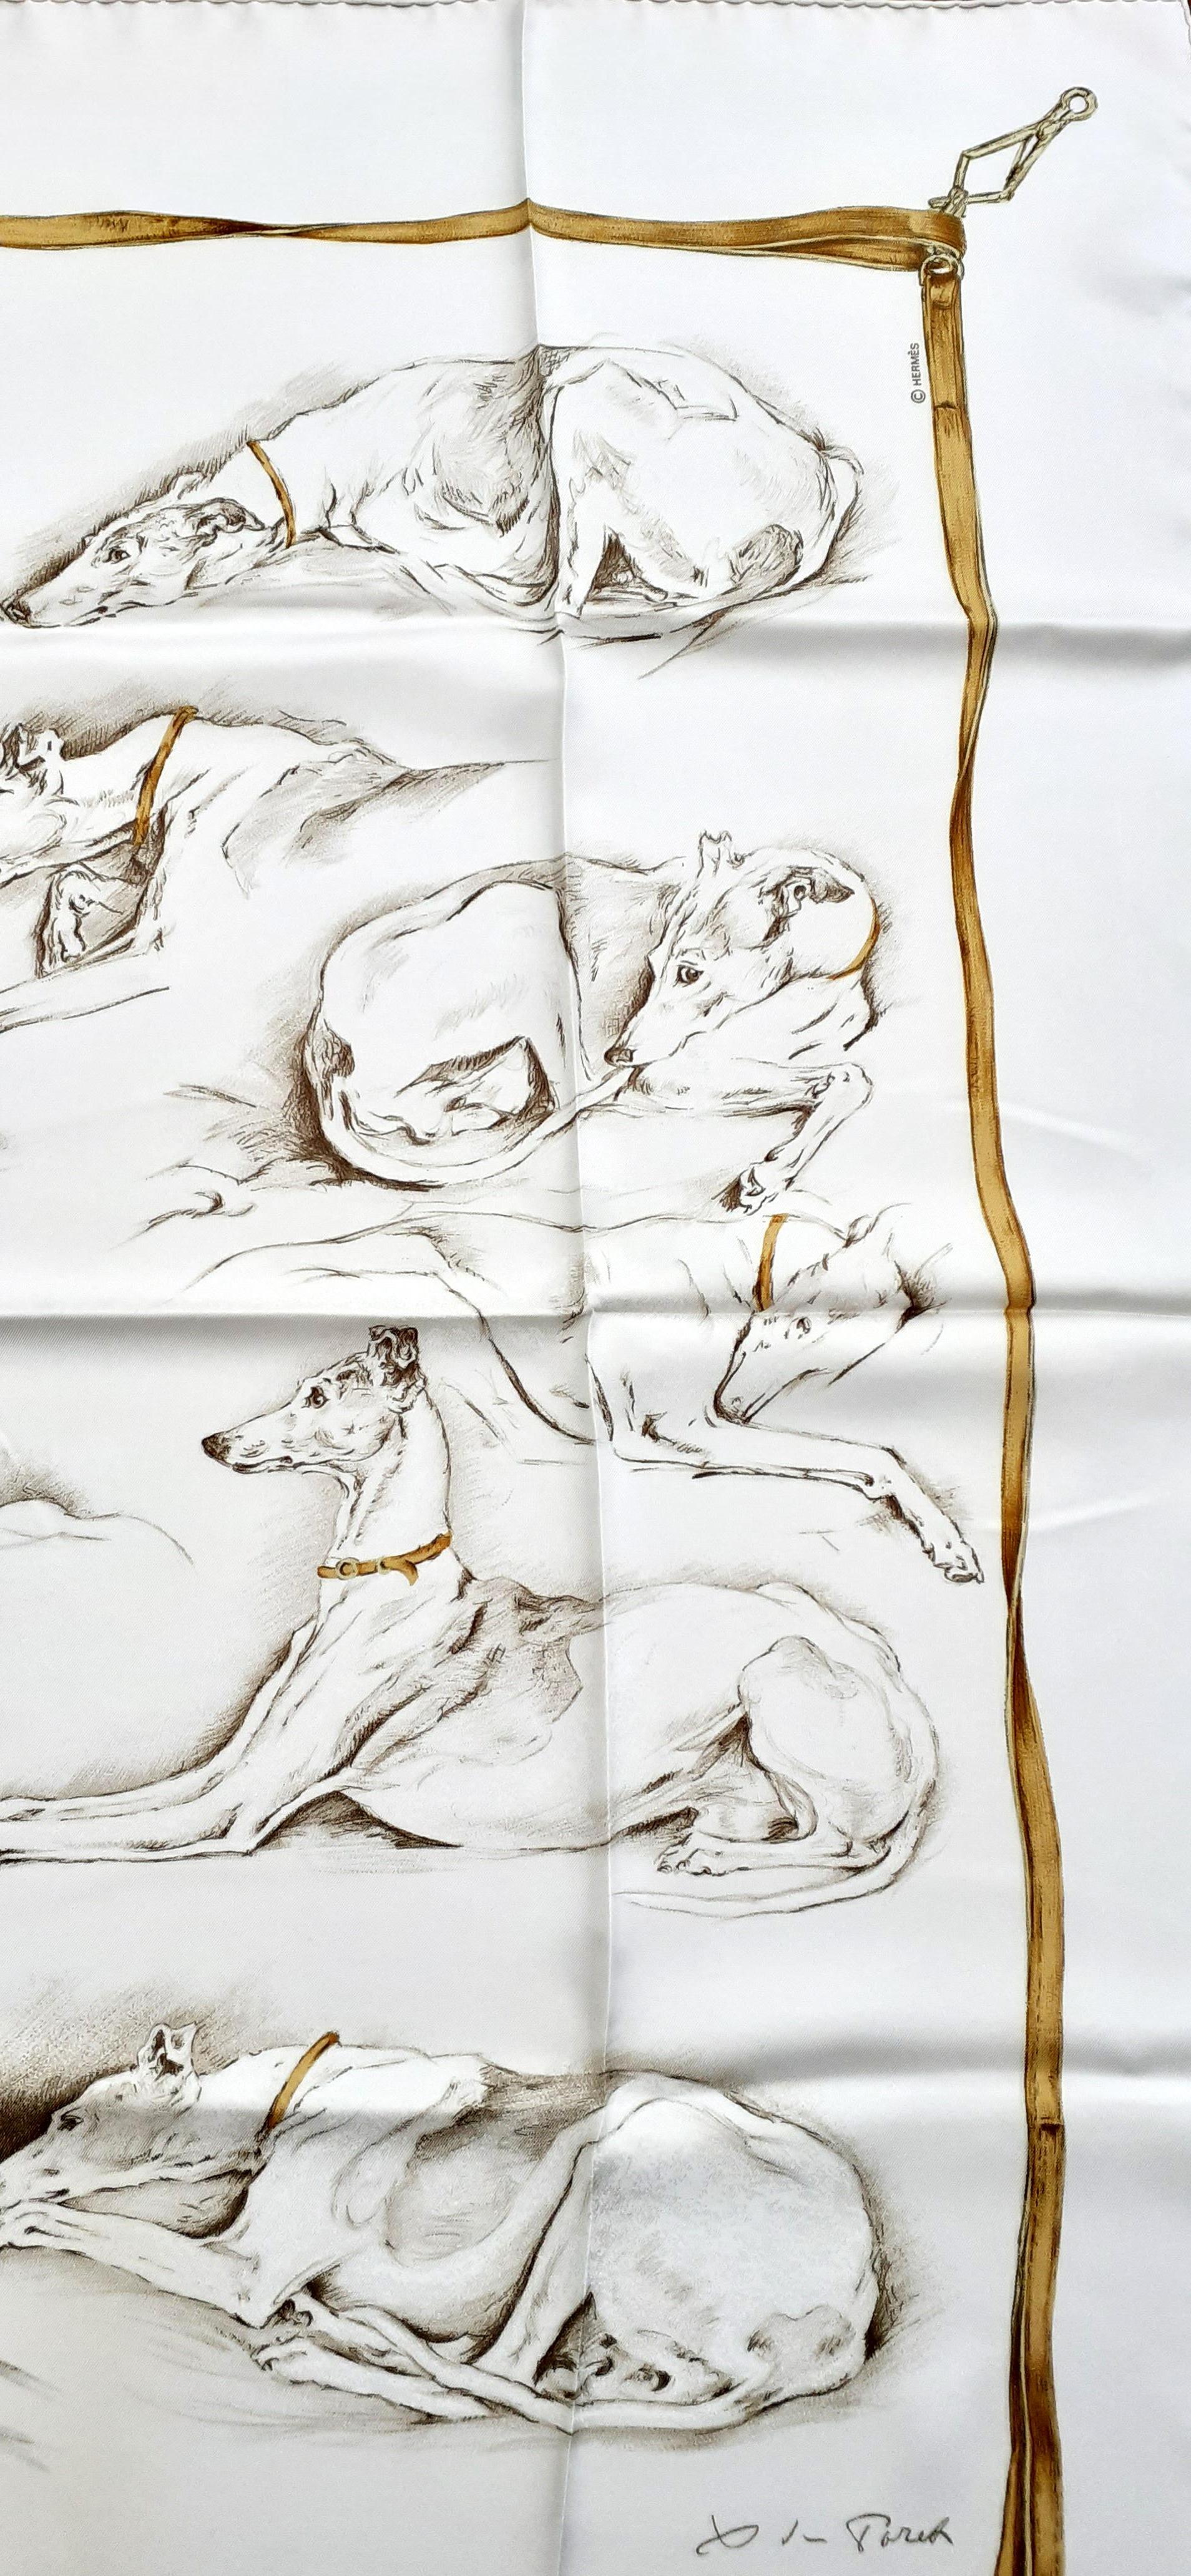 Foulard Hermès authentique absolument magnifique et rare
 
Pattern : Les Lévriers (Greyhounds Dogs)

Conçu par Xavier De Poret en 1970. Il s'agit d'une réédition

Fabriqué en France

Fait de 100% soie

Colorways : Blanc:: brun:: or

